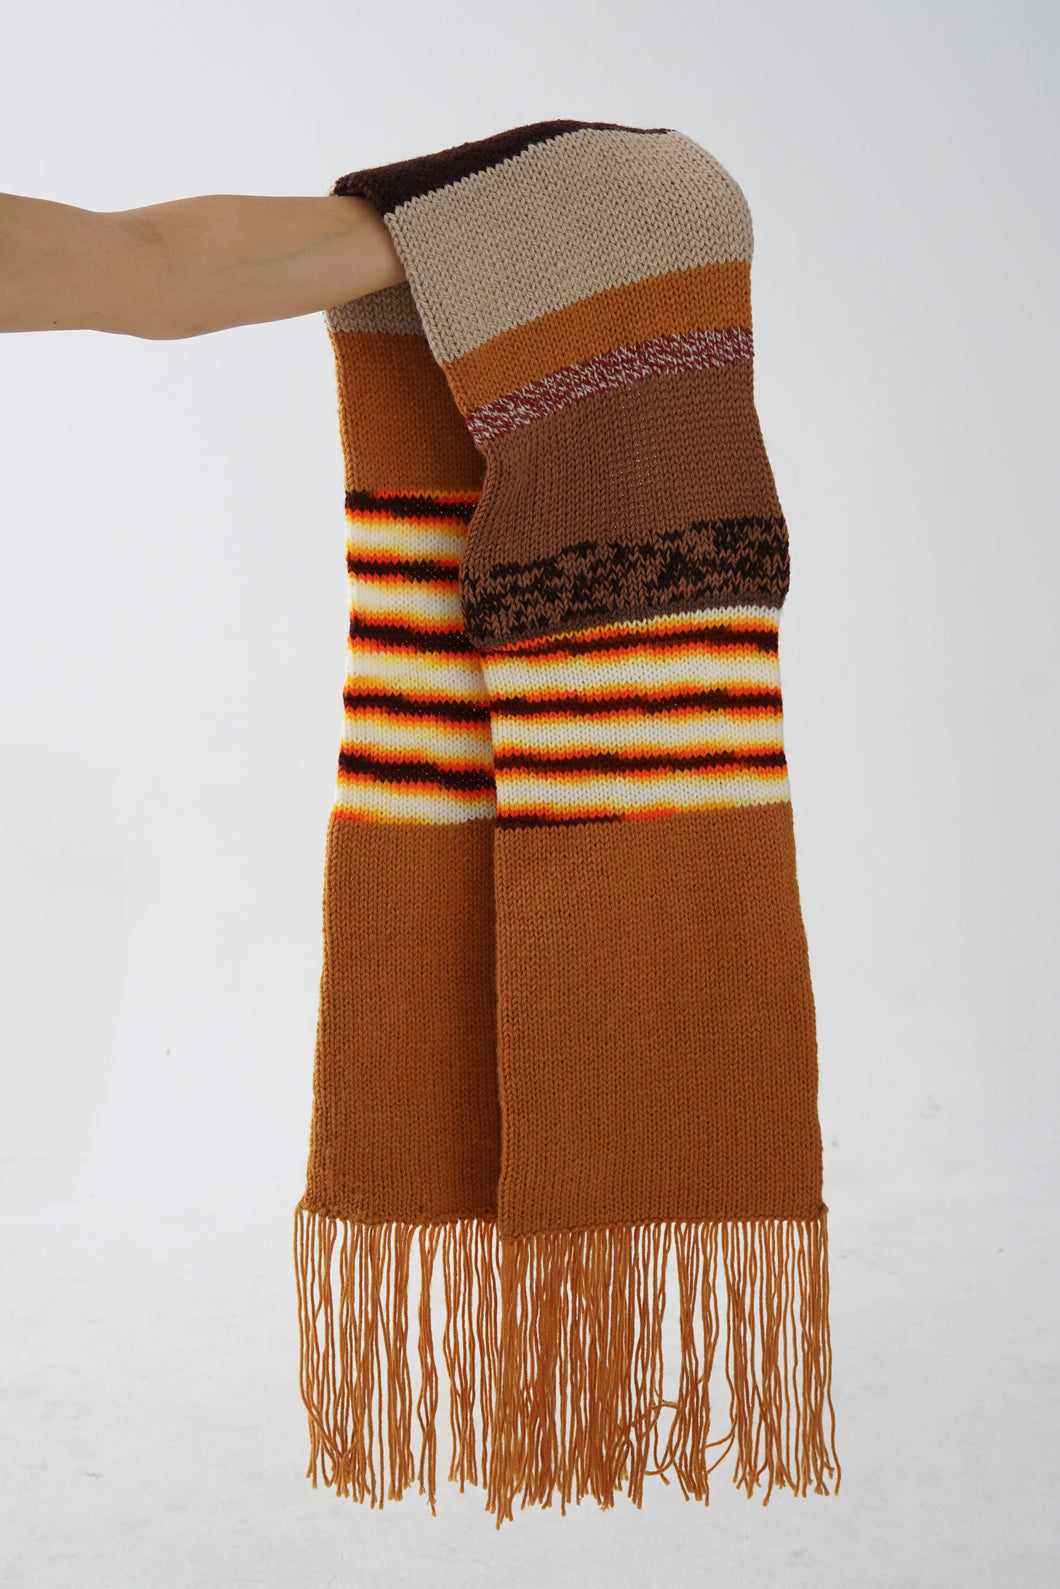 Foulard tricoté fait à la main brun, tan et orange